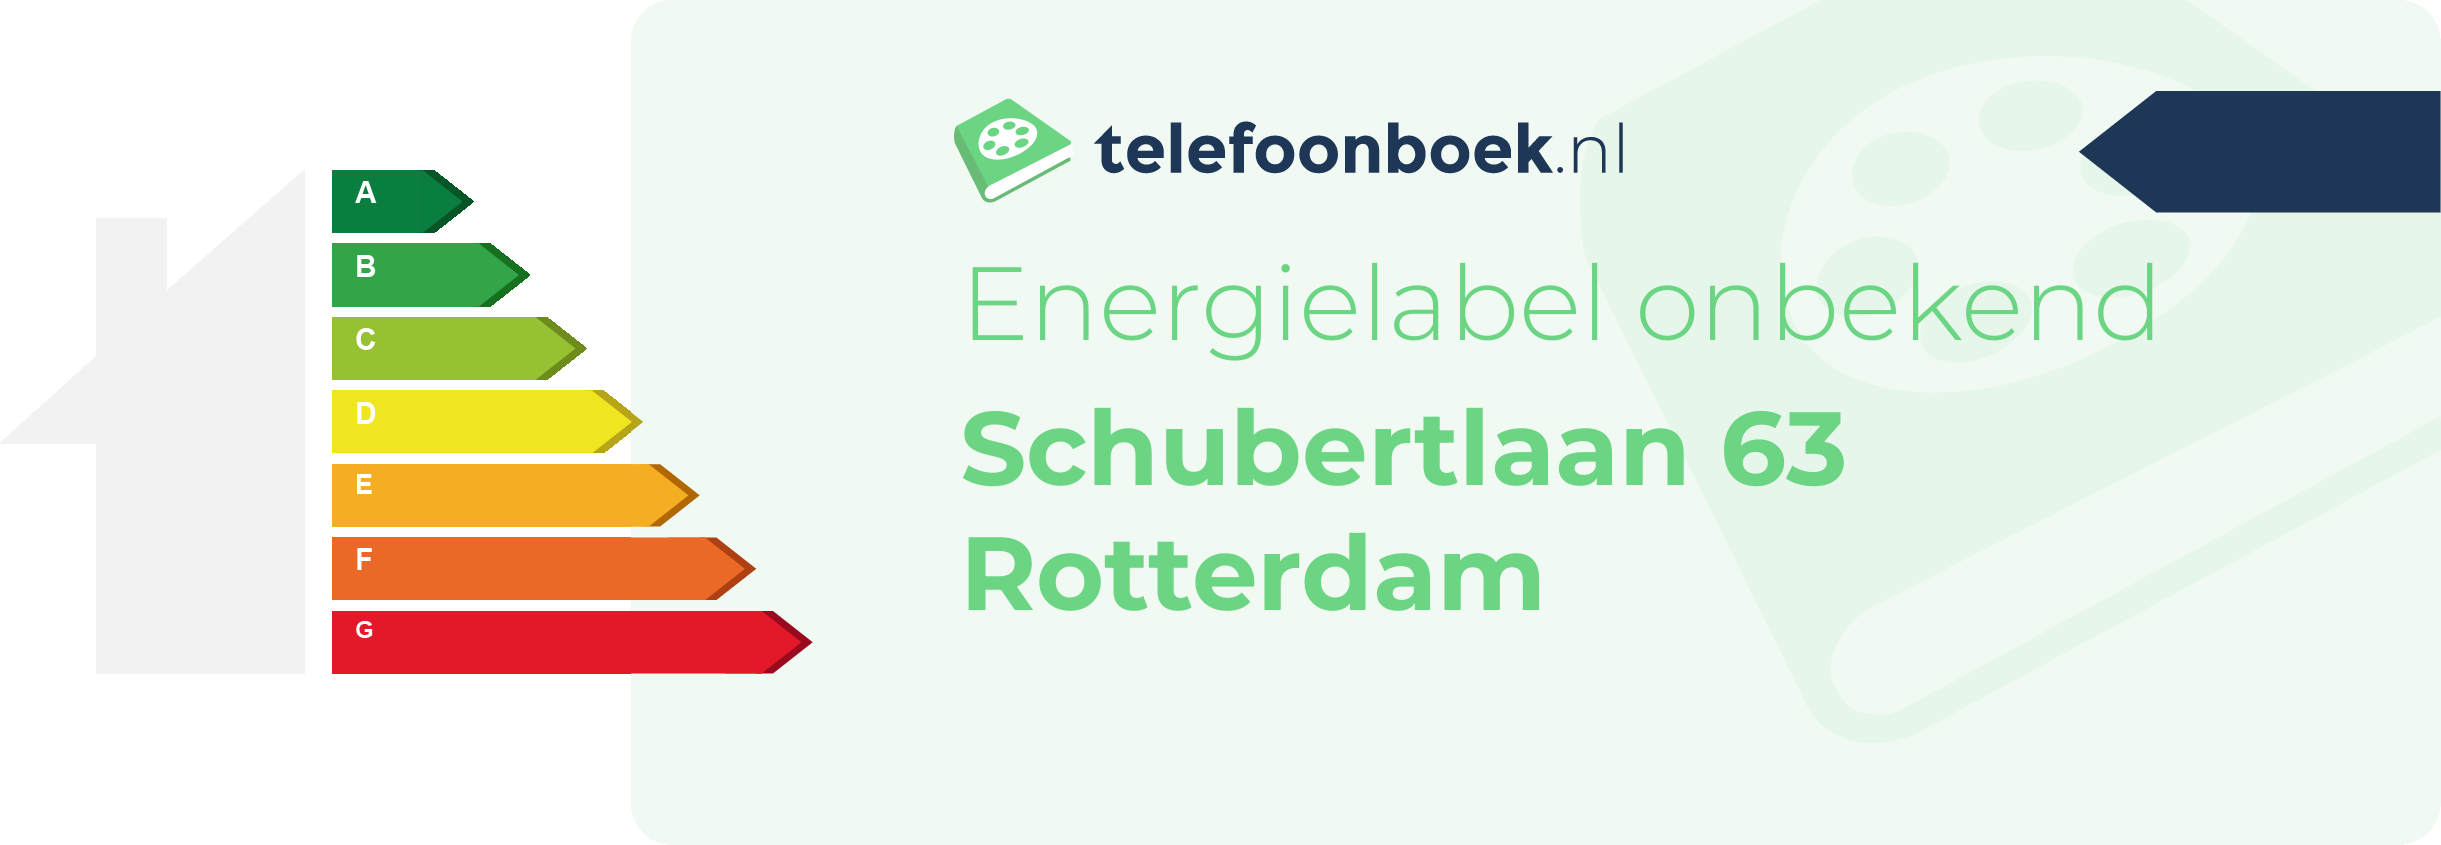 Energielabel Schubertlaan 63 Rotterdam